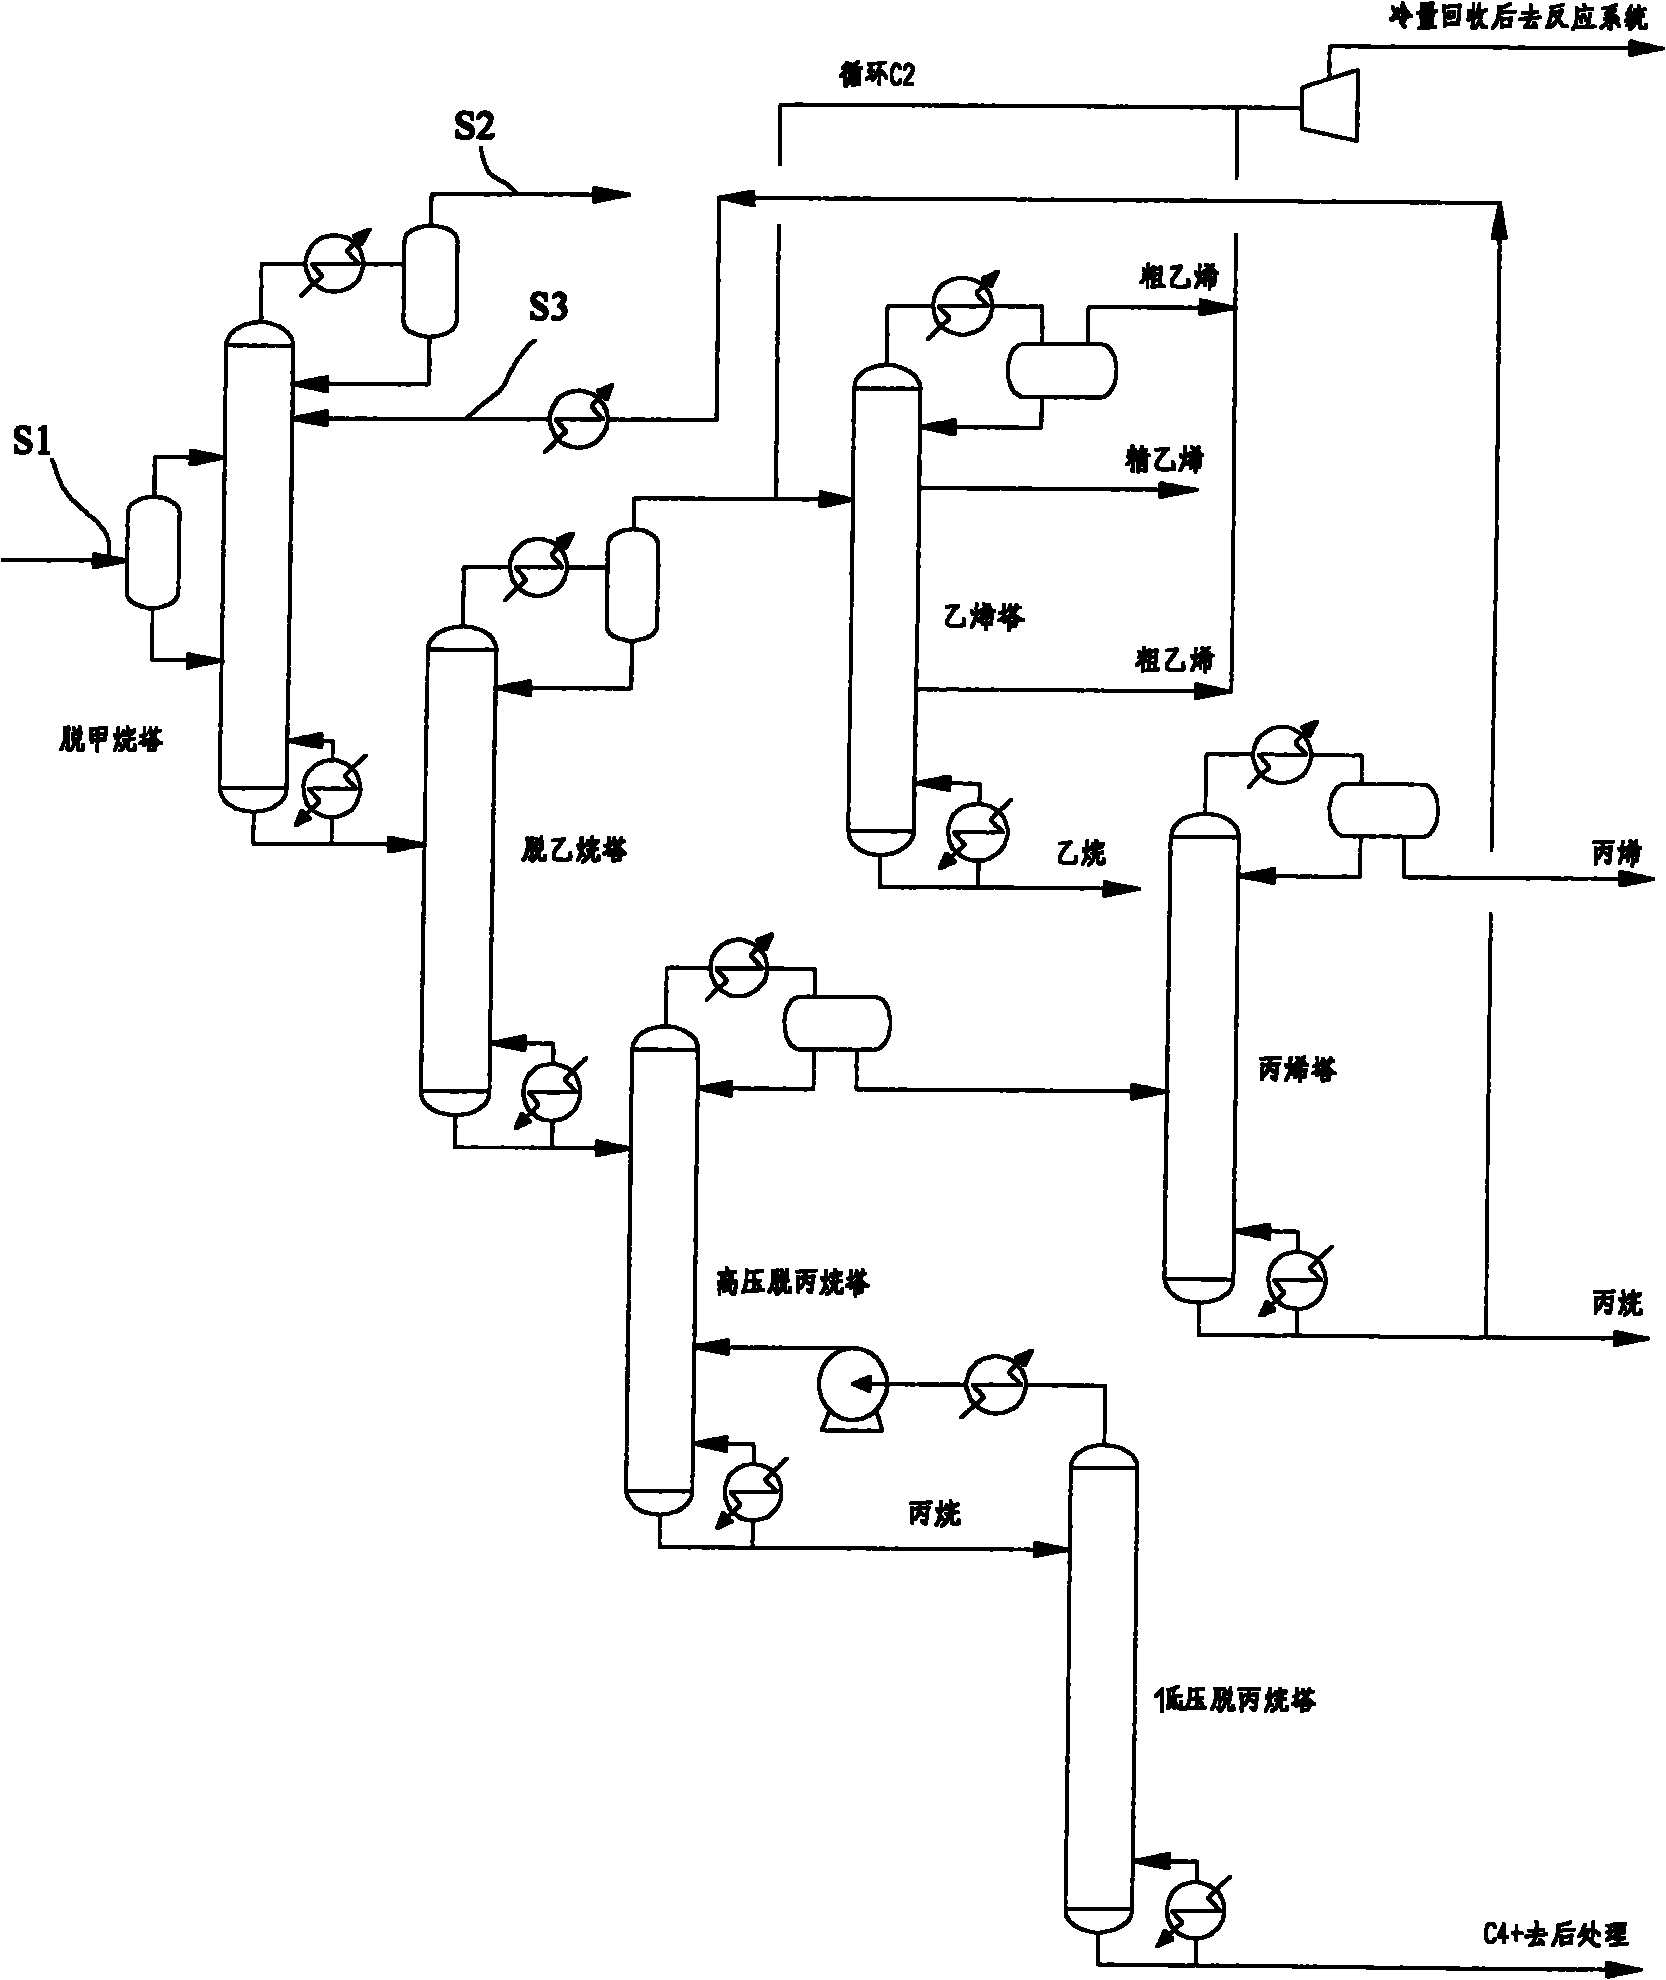 Method for separating low-carbon olefins